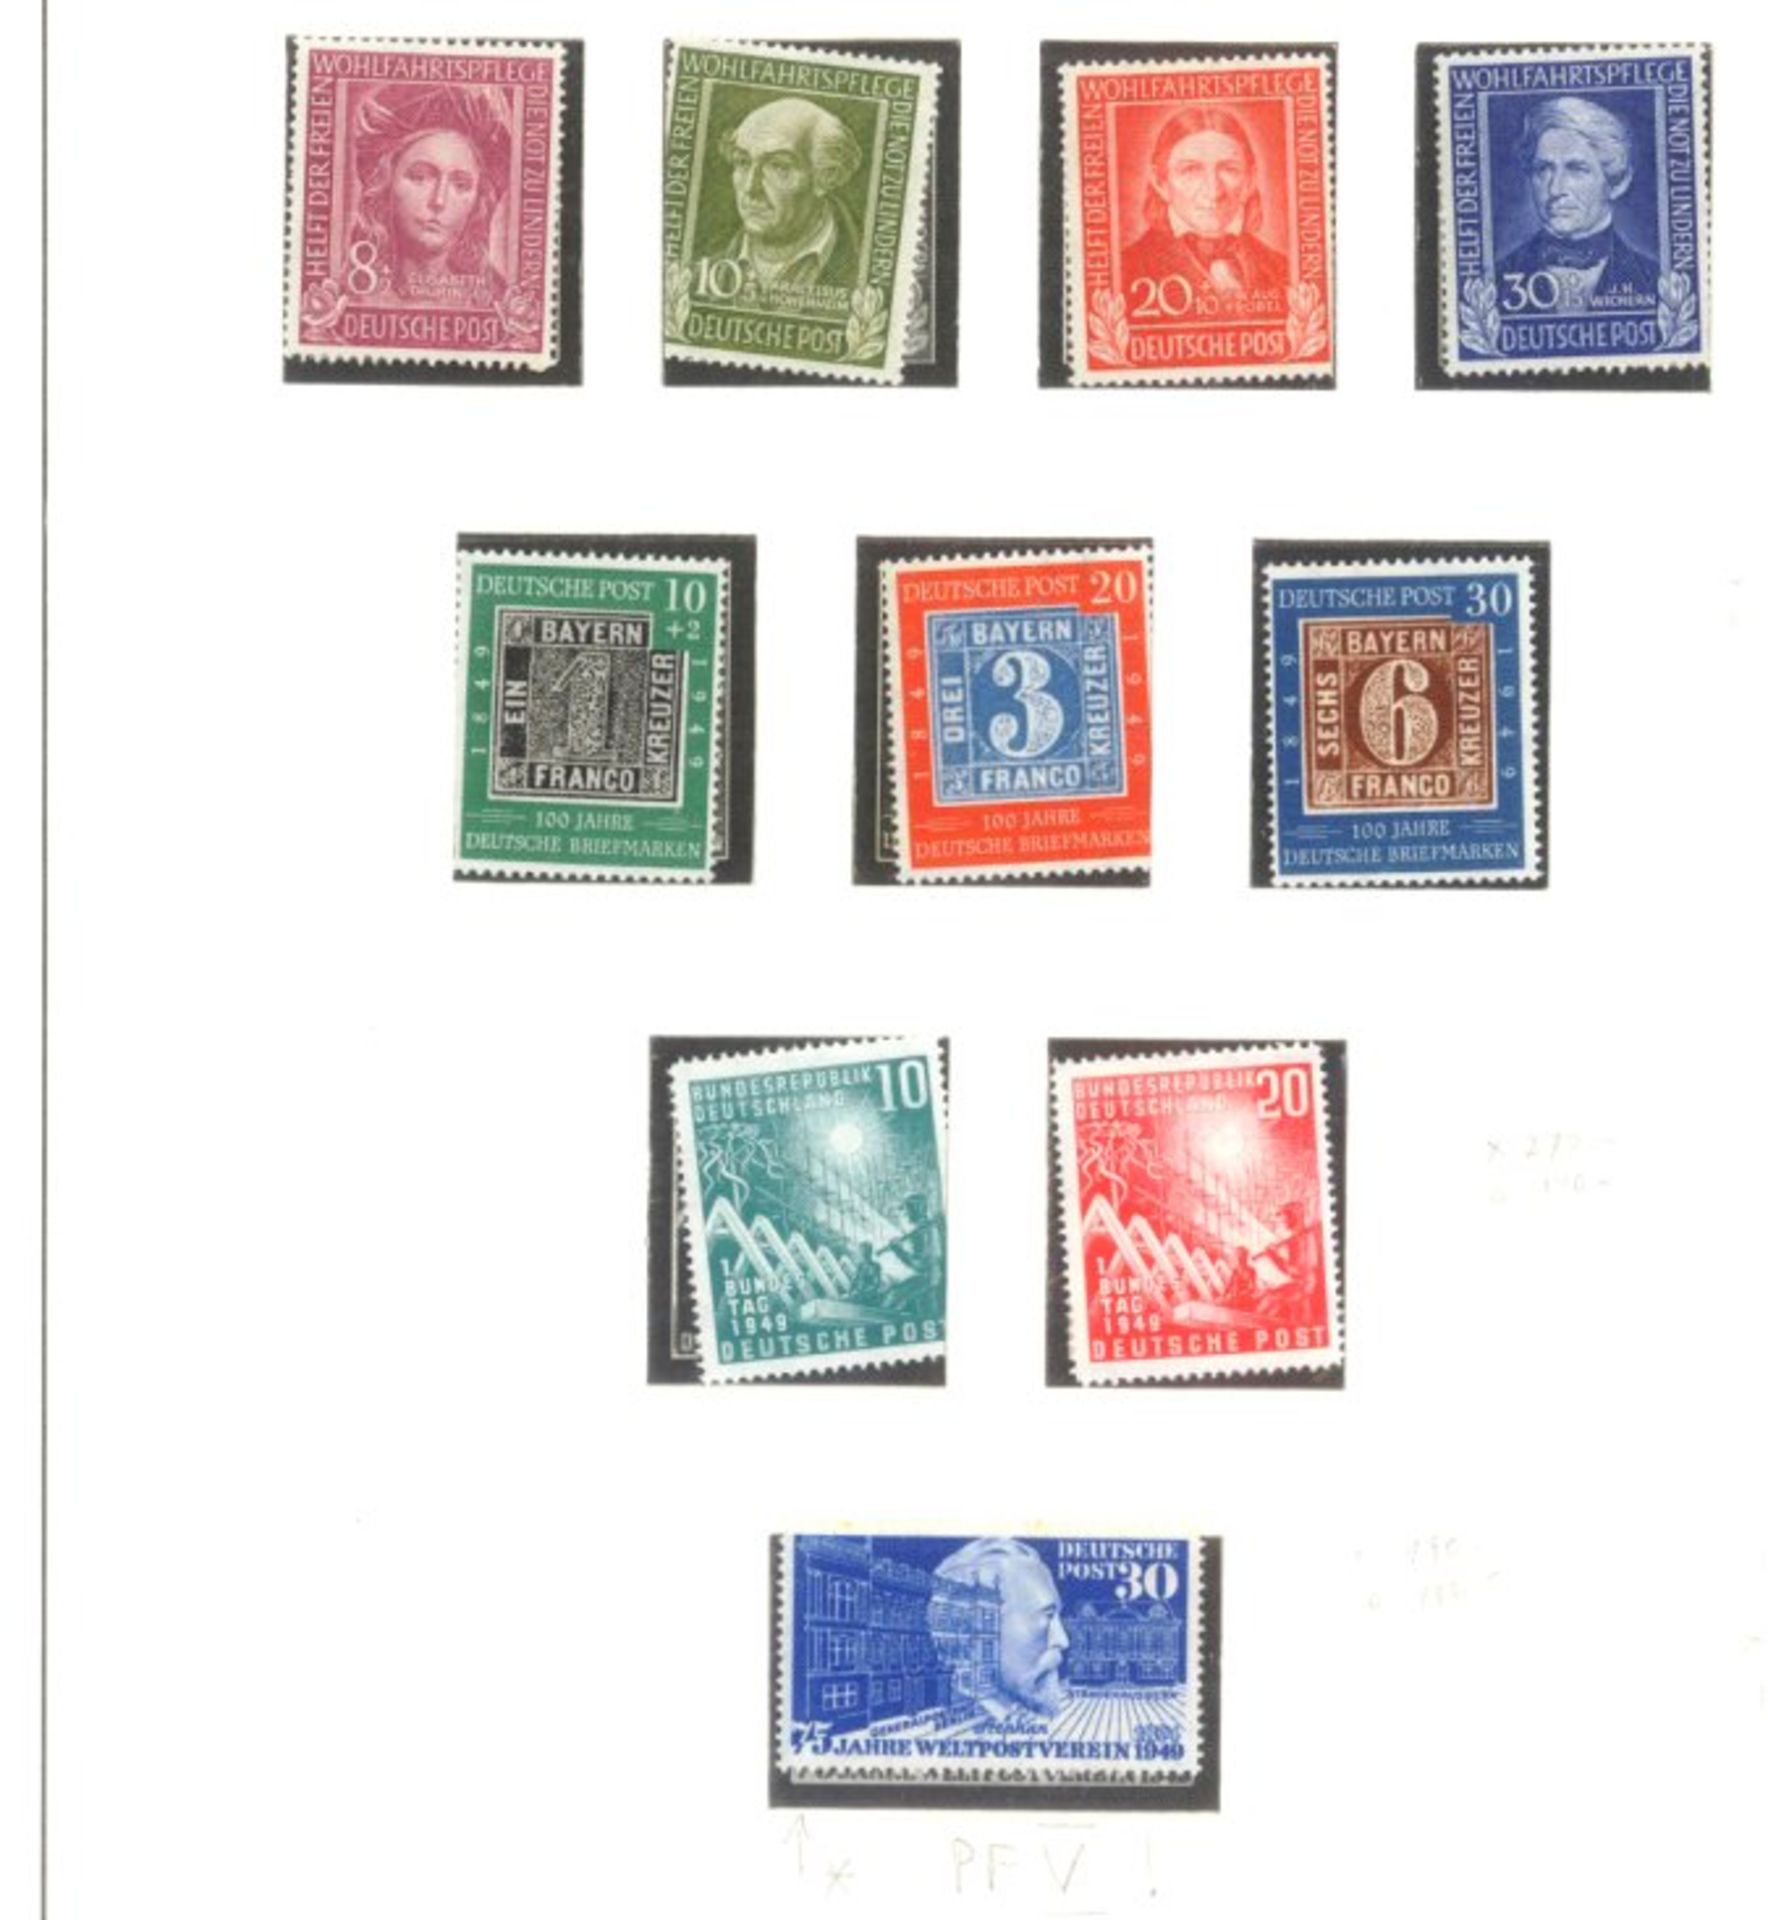 BUND 1949-1986sehr saubere postfrische Sammlung auf LINDNER -Falzlosblättern mit 3 Ringbindern. In - Bild 2 aus 9